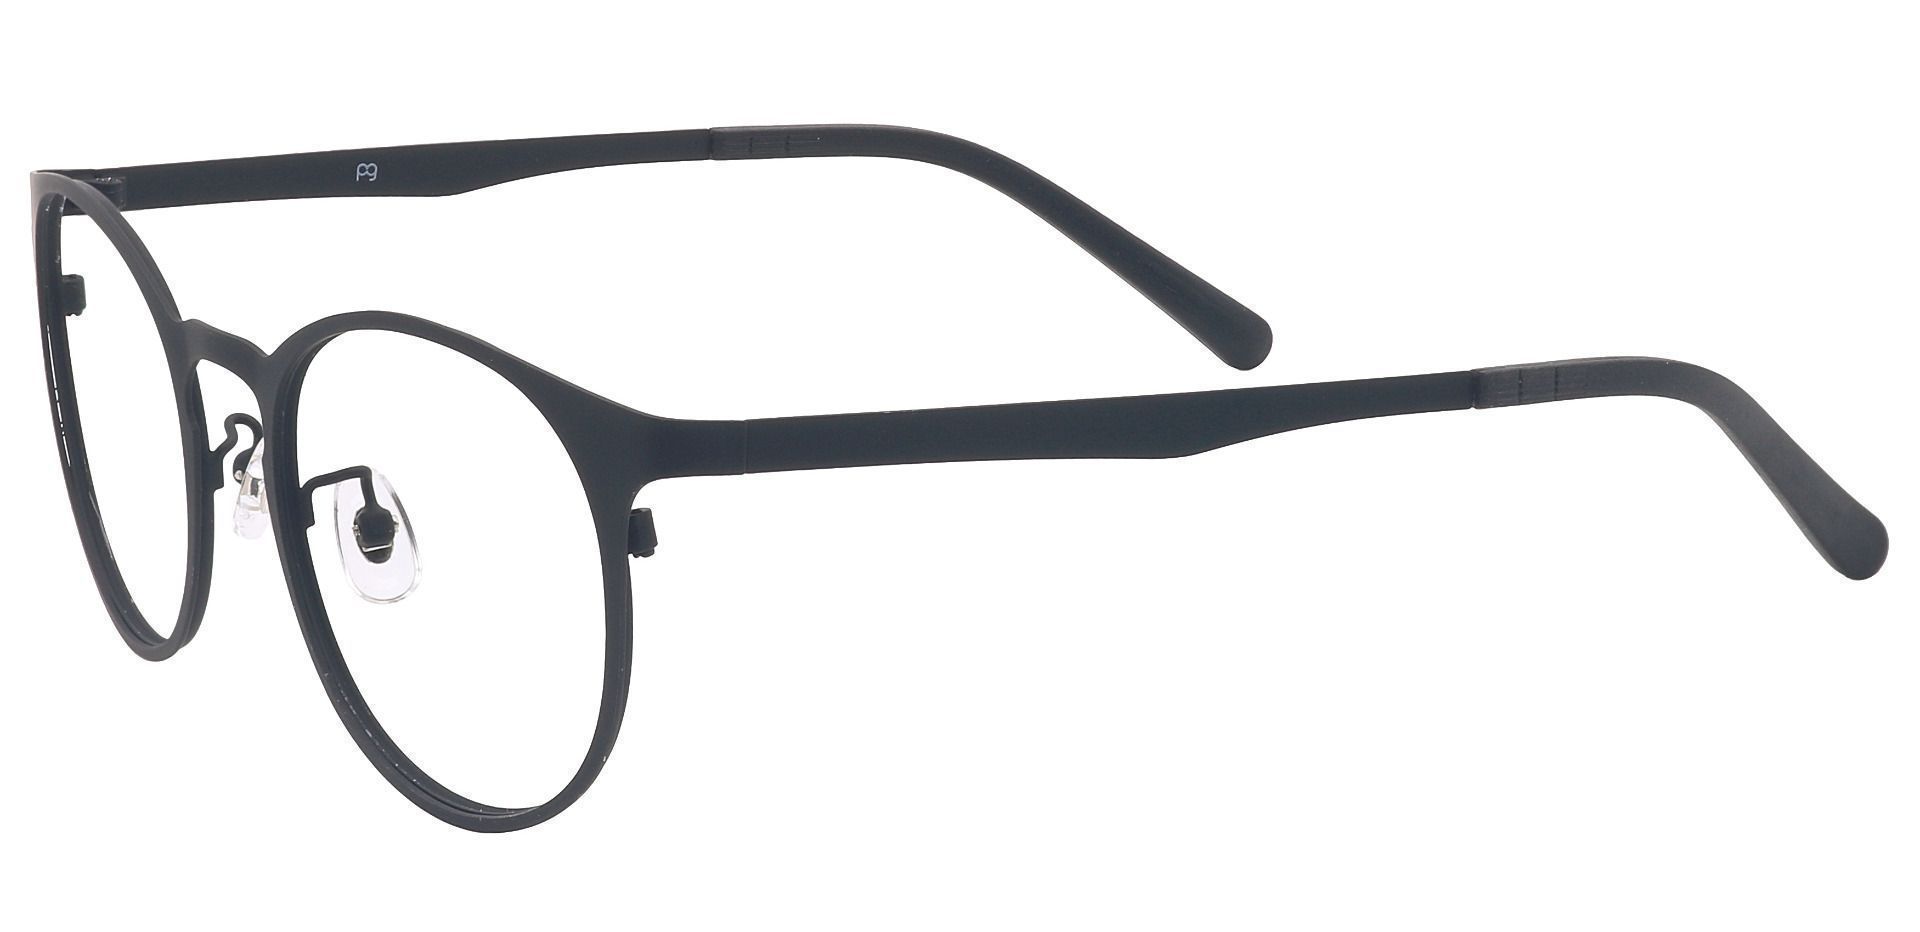 Wallace Oval Progressive Glasses - Black